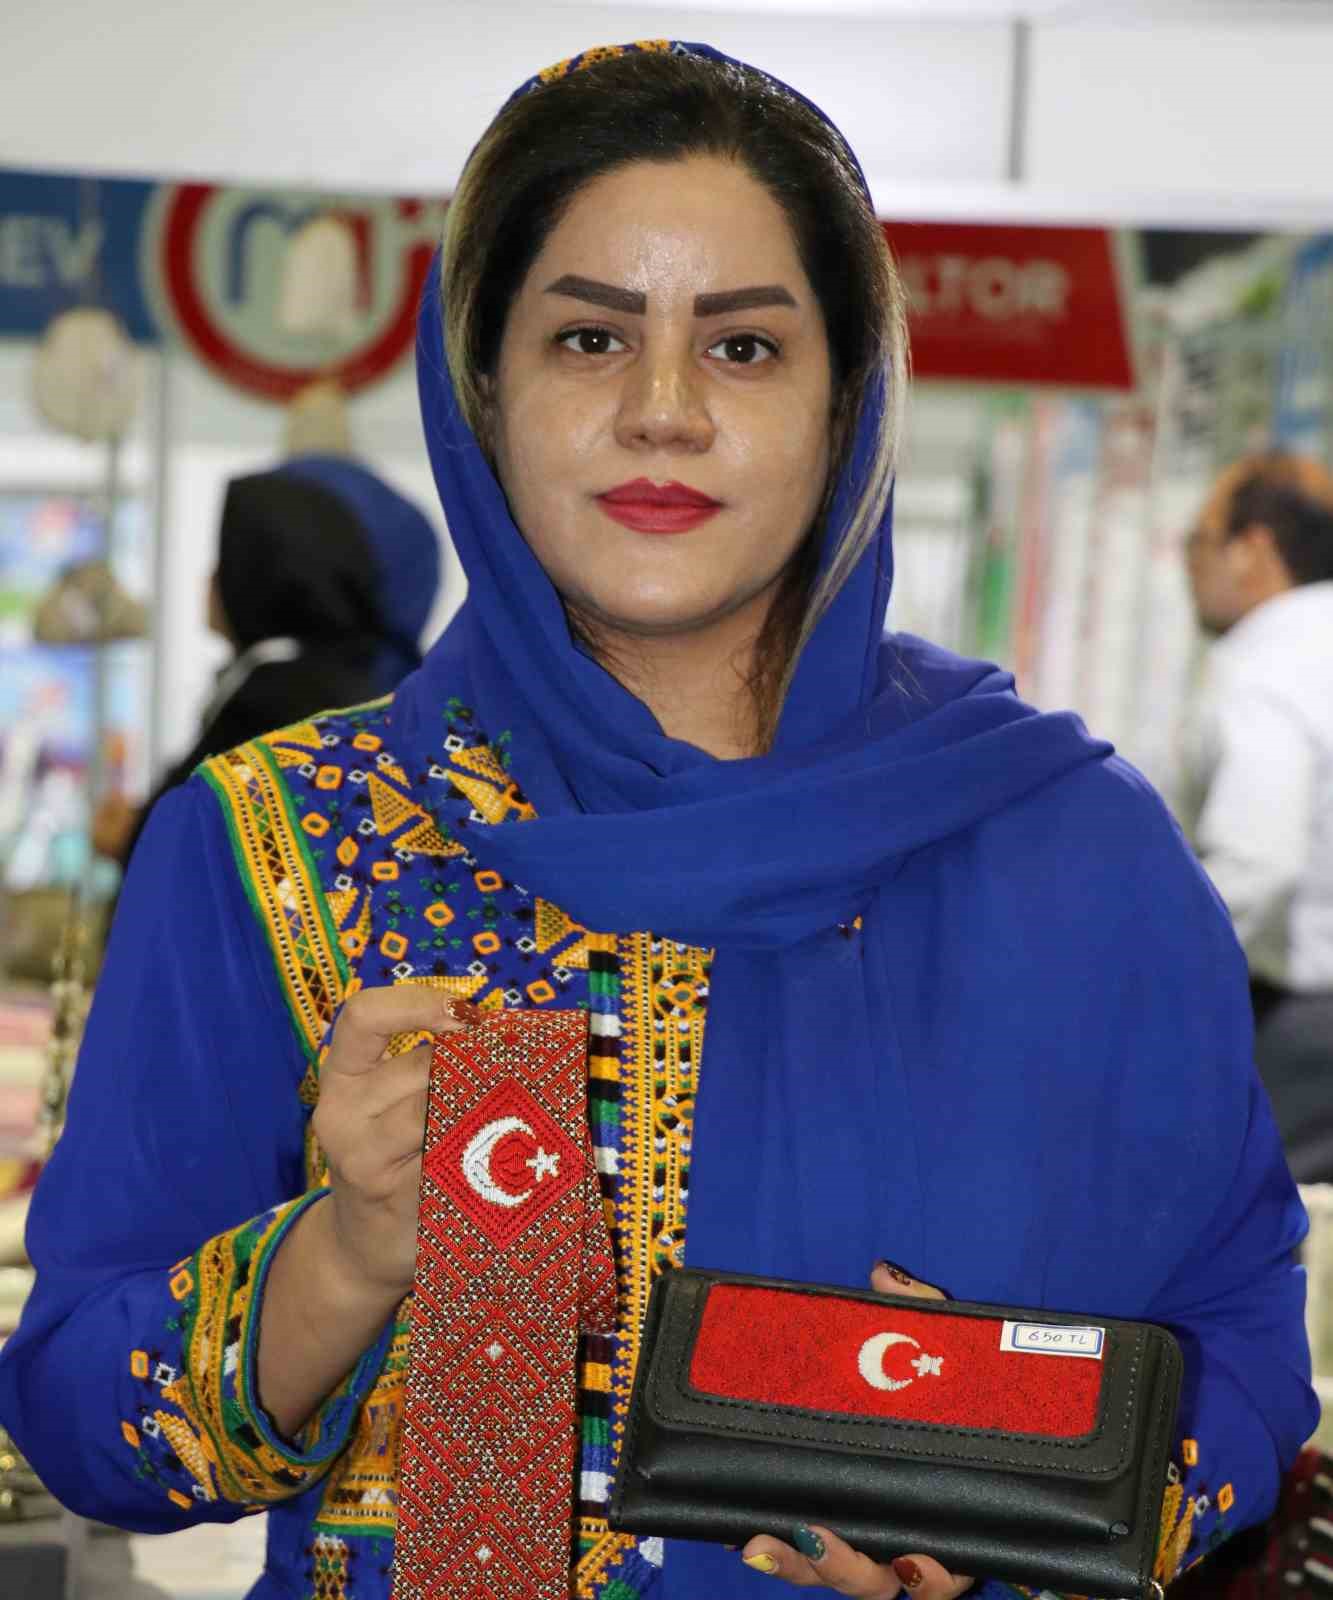 İranlı kadın Türk bayrağını kravat ve cüzdanlara işledi